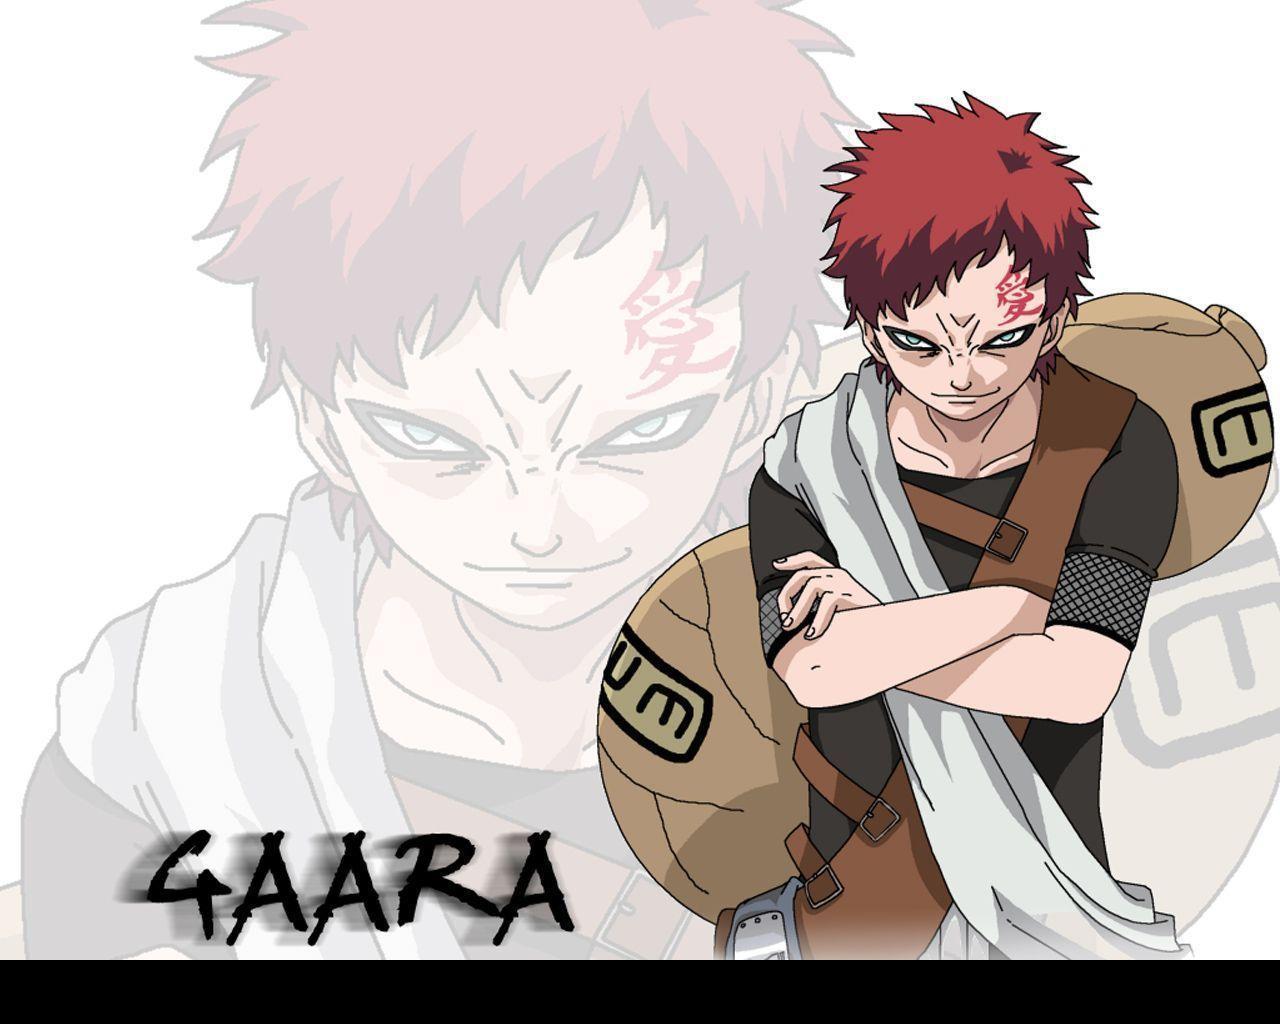 image For > Naruto Gaara Wallpaper